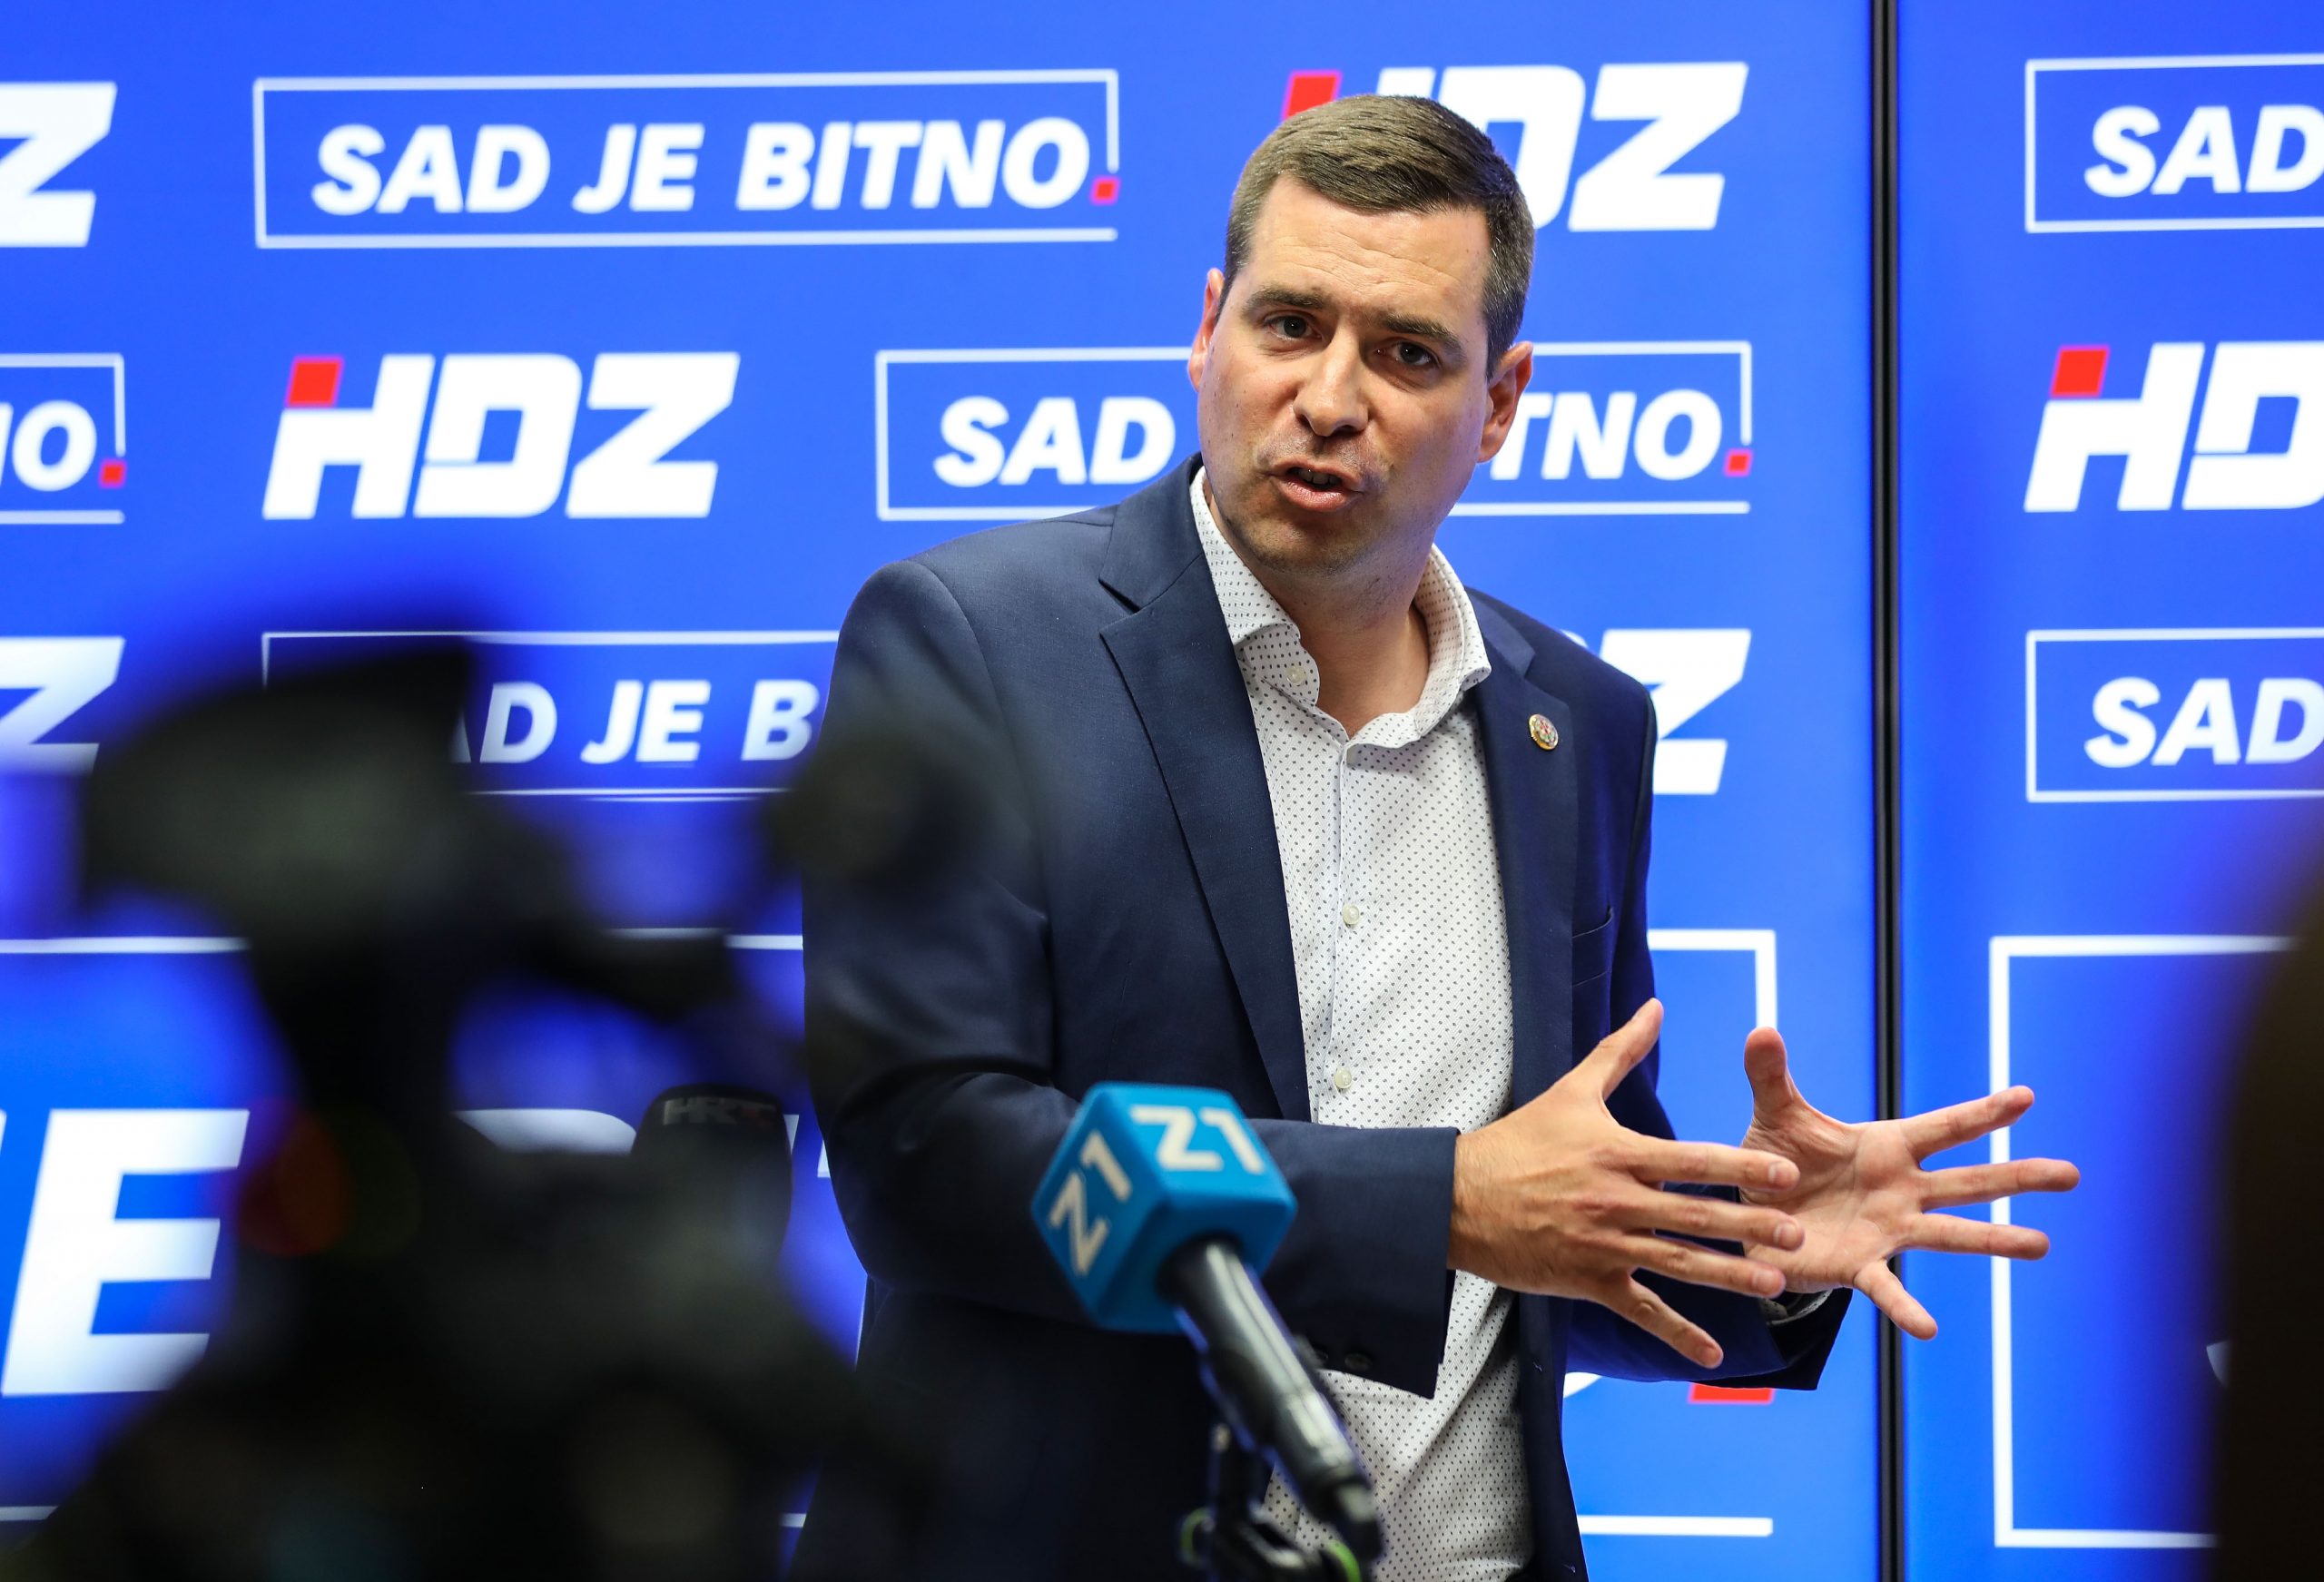 21.05.2021, Zagreb - Predsjednik GO HDZ-a, Mislav Herman odrzao je konferenciju za medije.
Photo: Jurica Galoic/PIXSELL